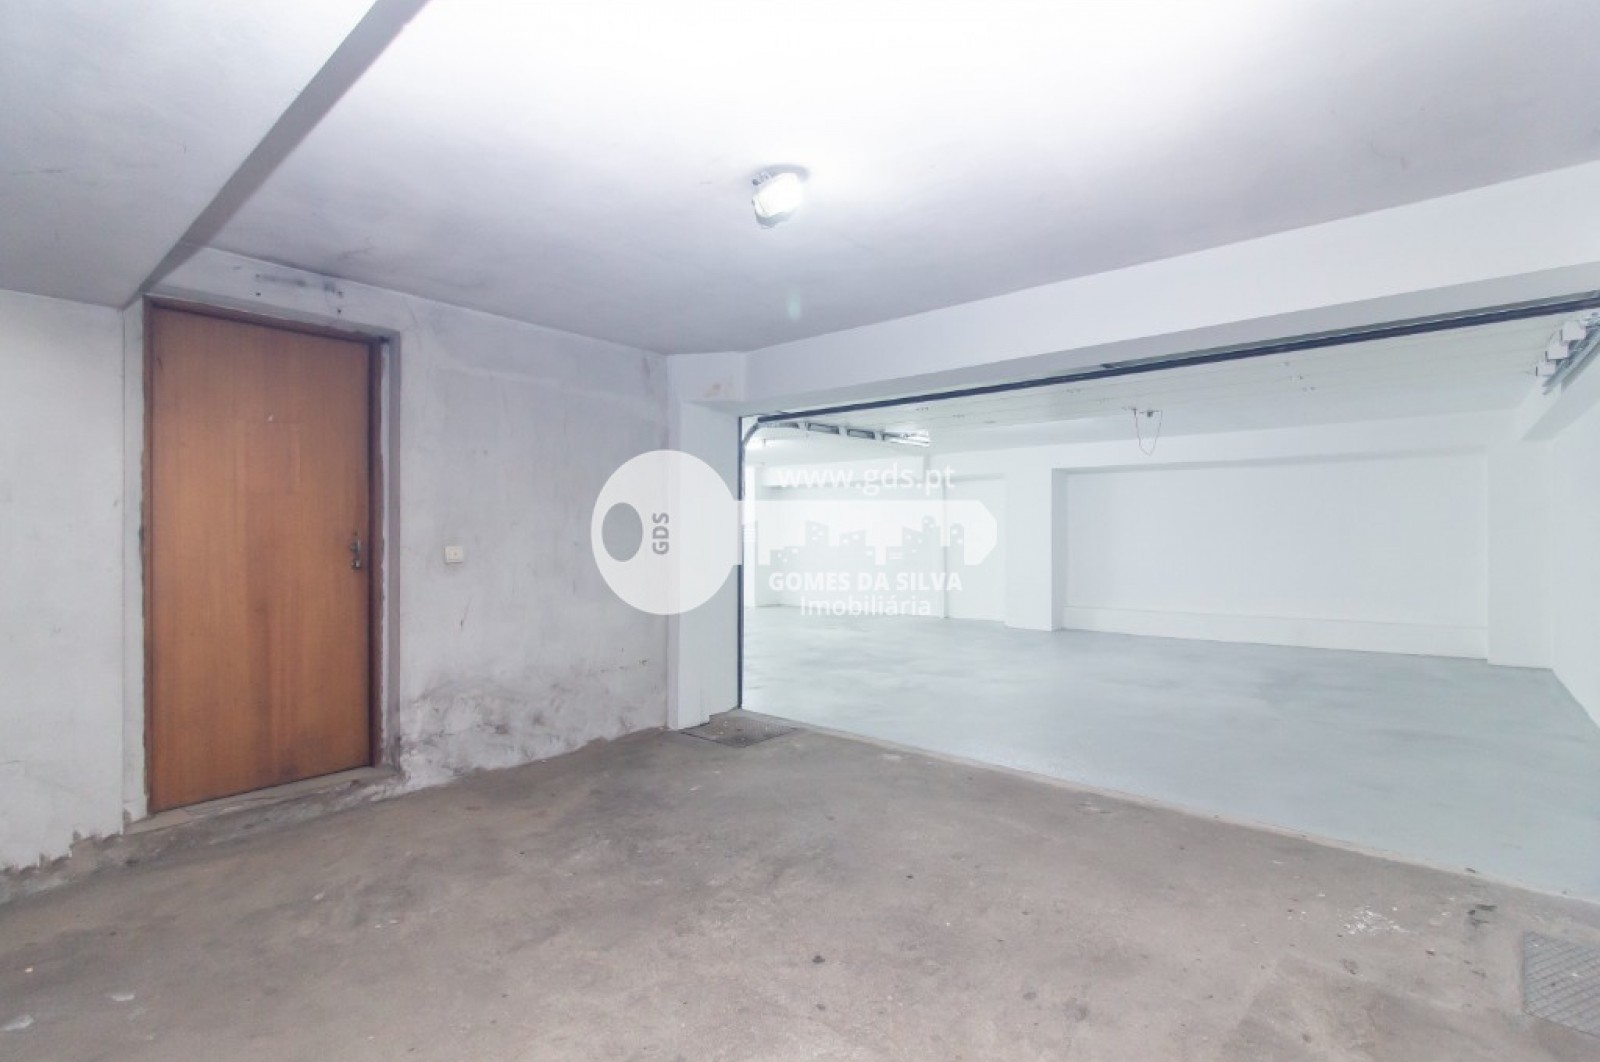 Garagem para Venda em São Vicente, Braga, Braga - Imagem 16